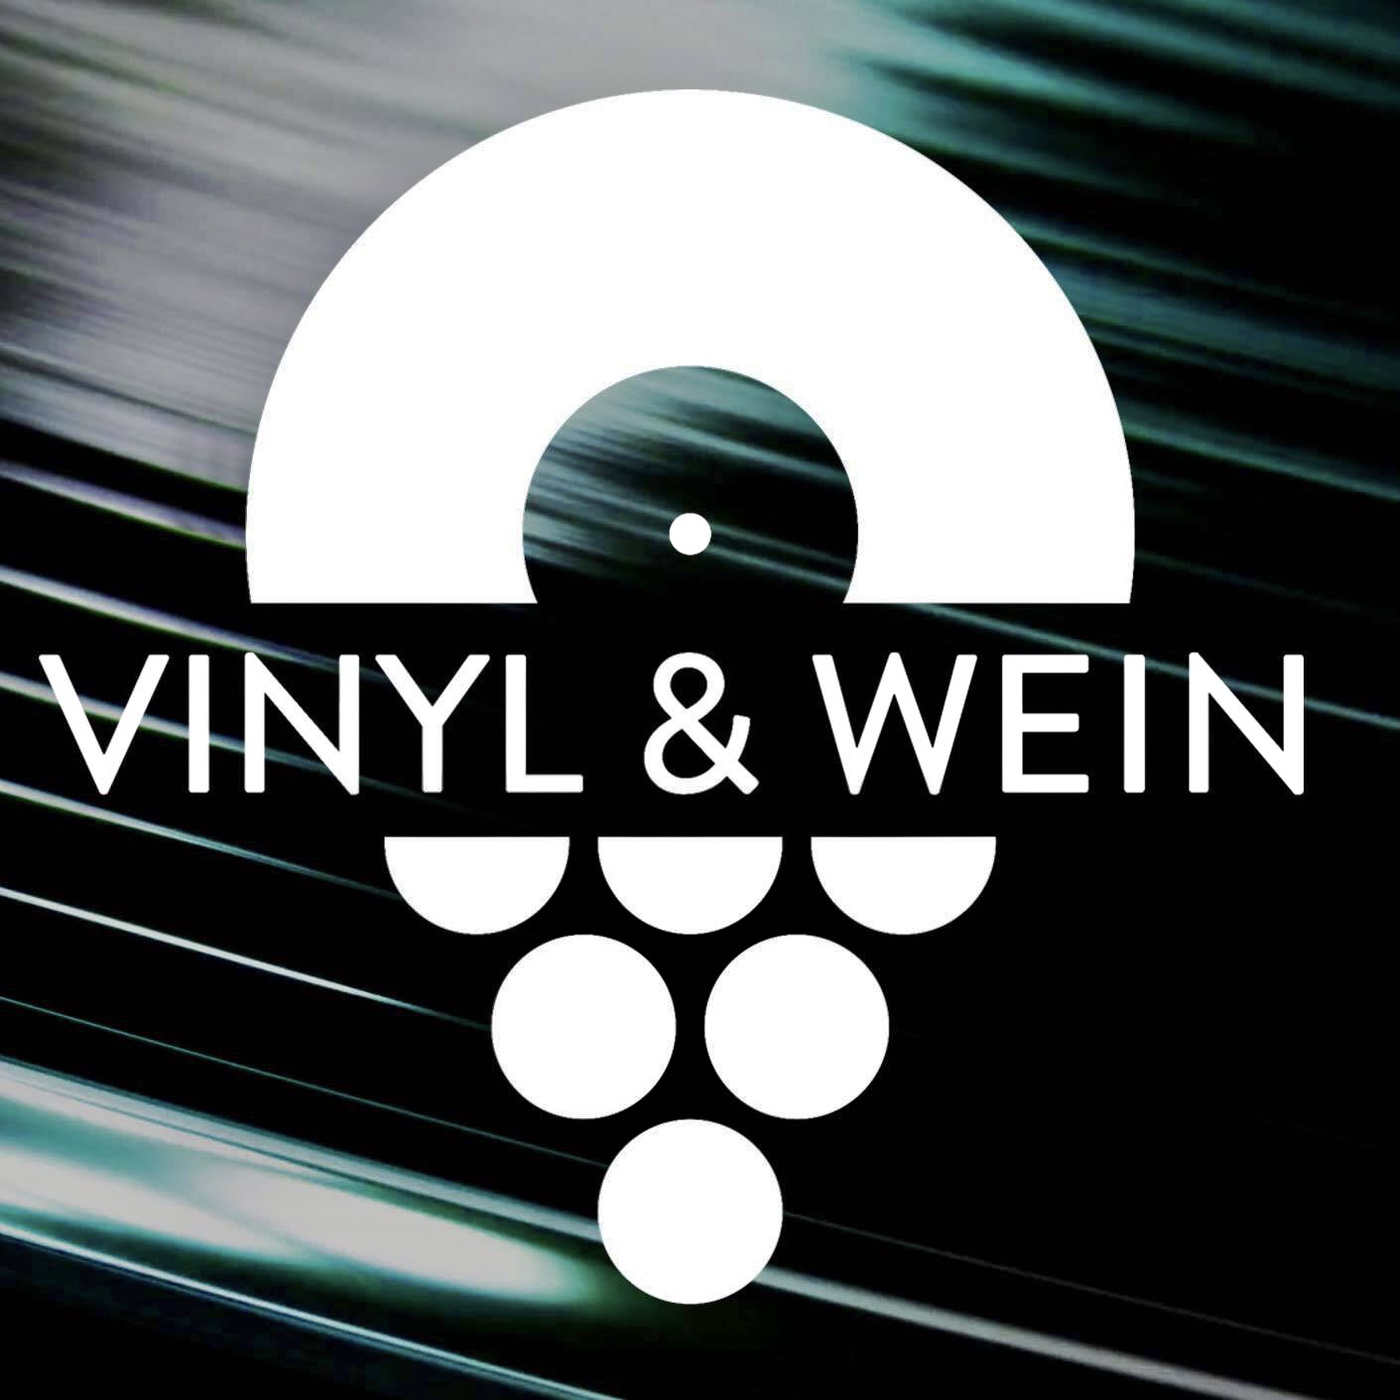 VINYL & WEIN - Der weinhaltige Musik-Podcast